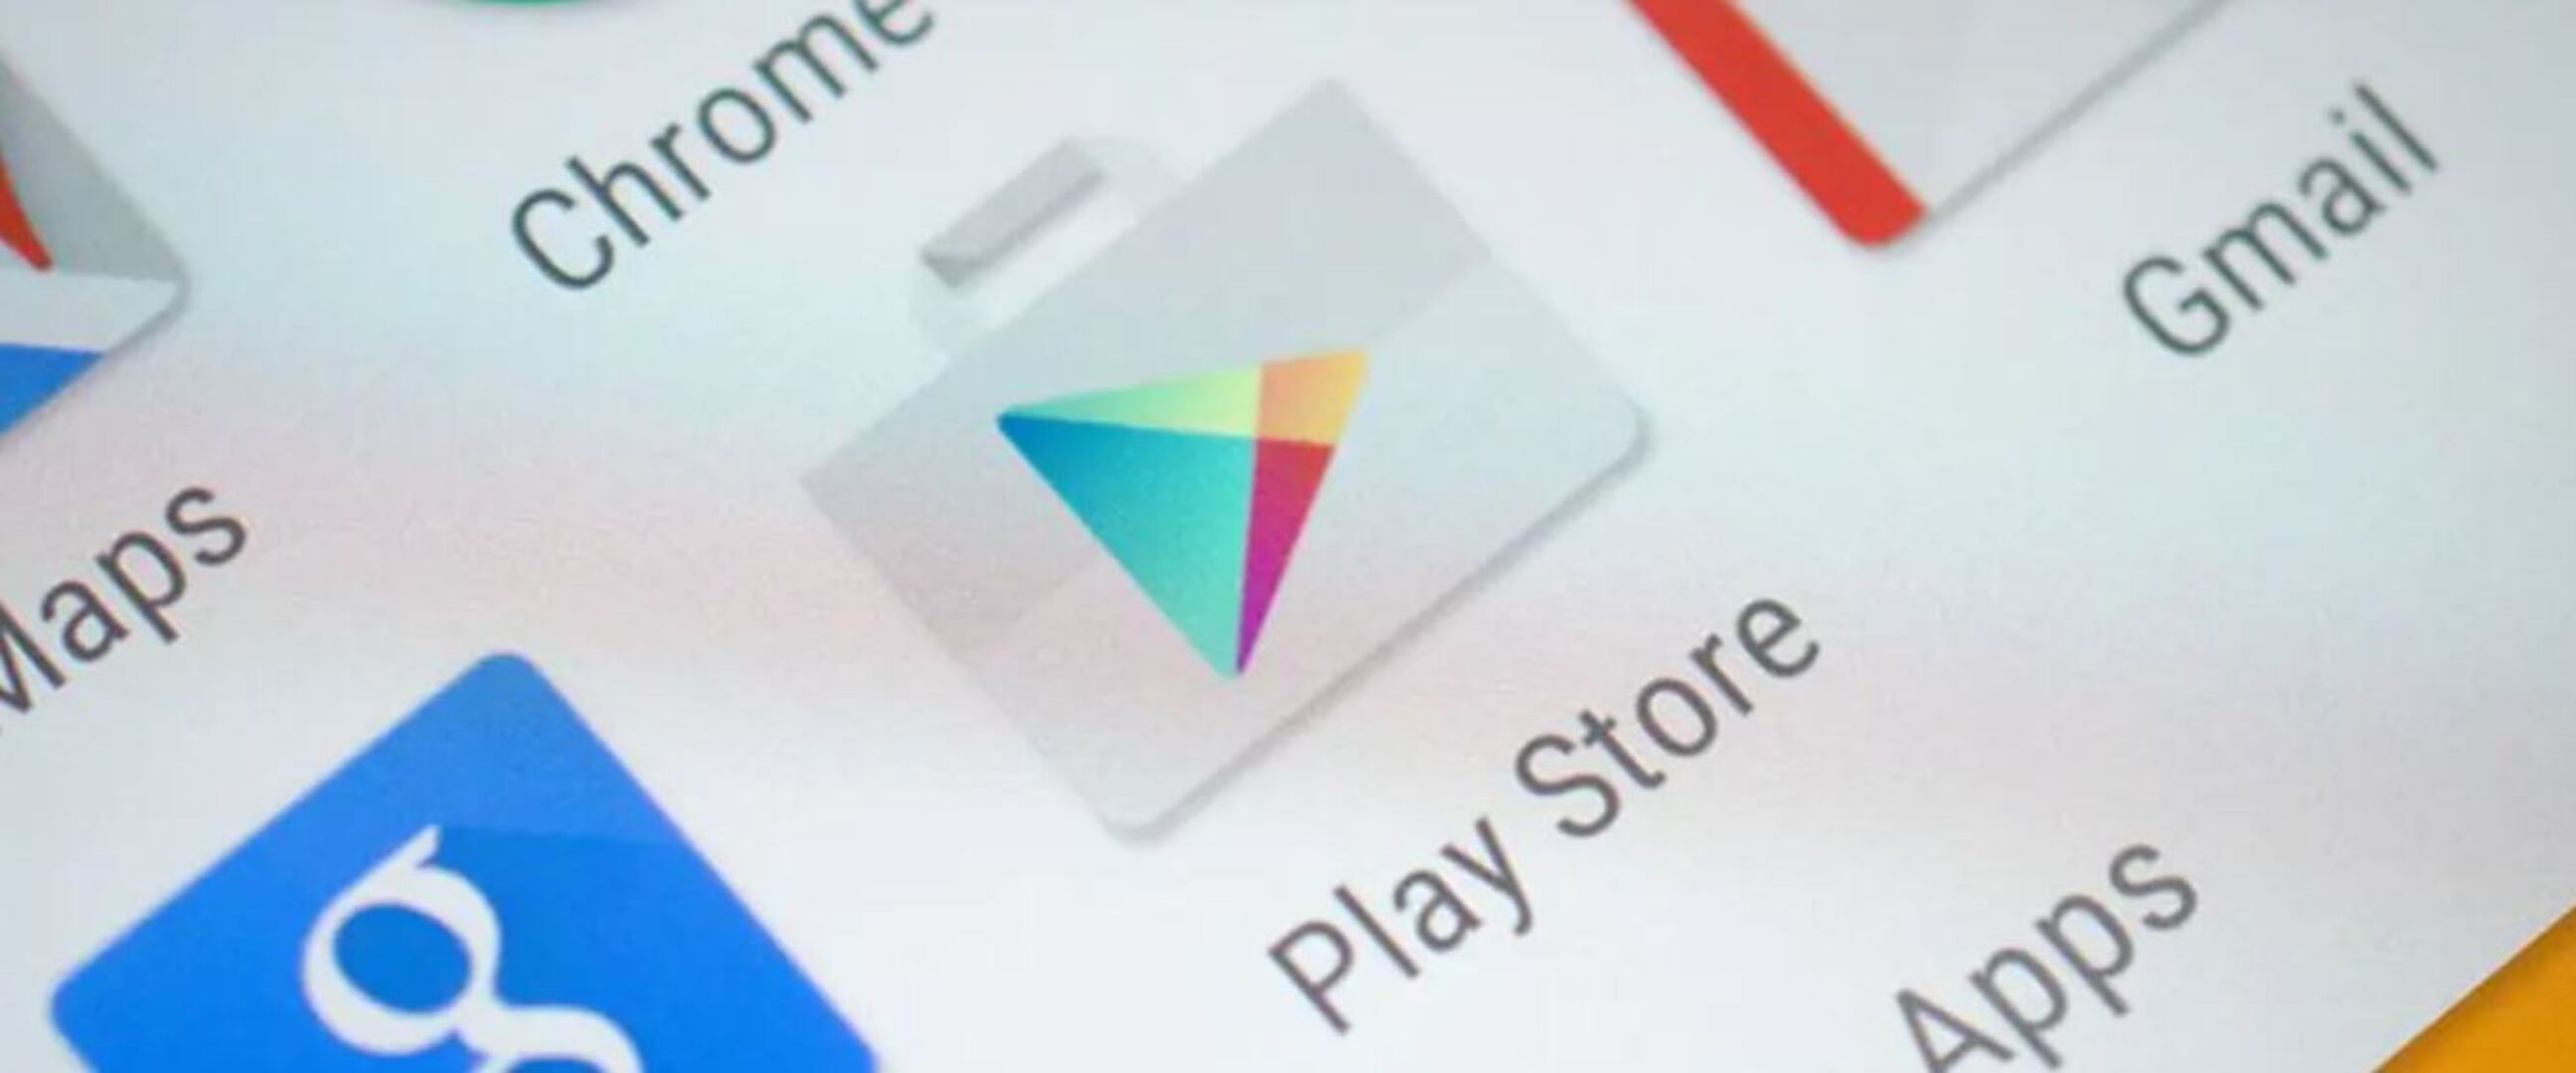 Play Store adakan tab baru "Offers" untuk rekomendasi game & aplikasi